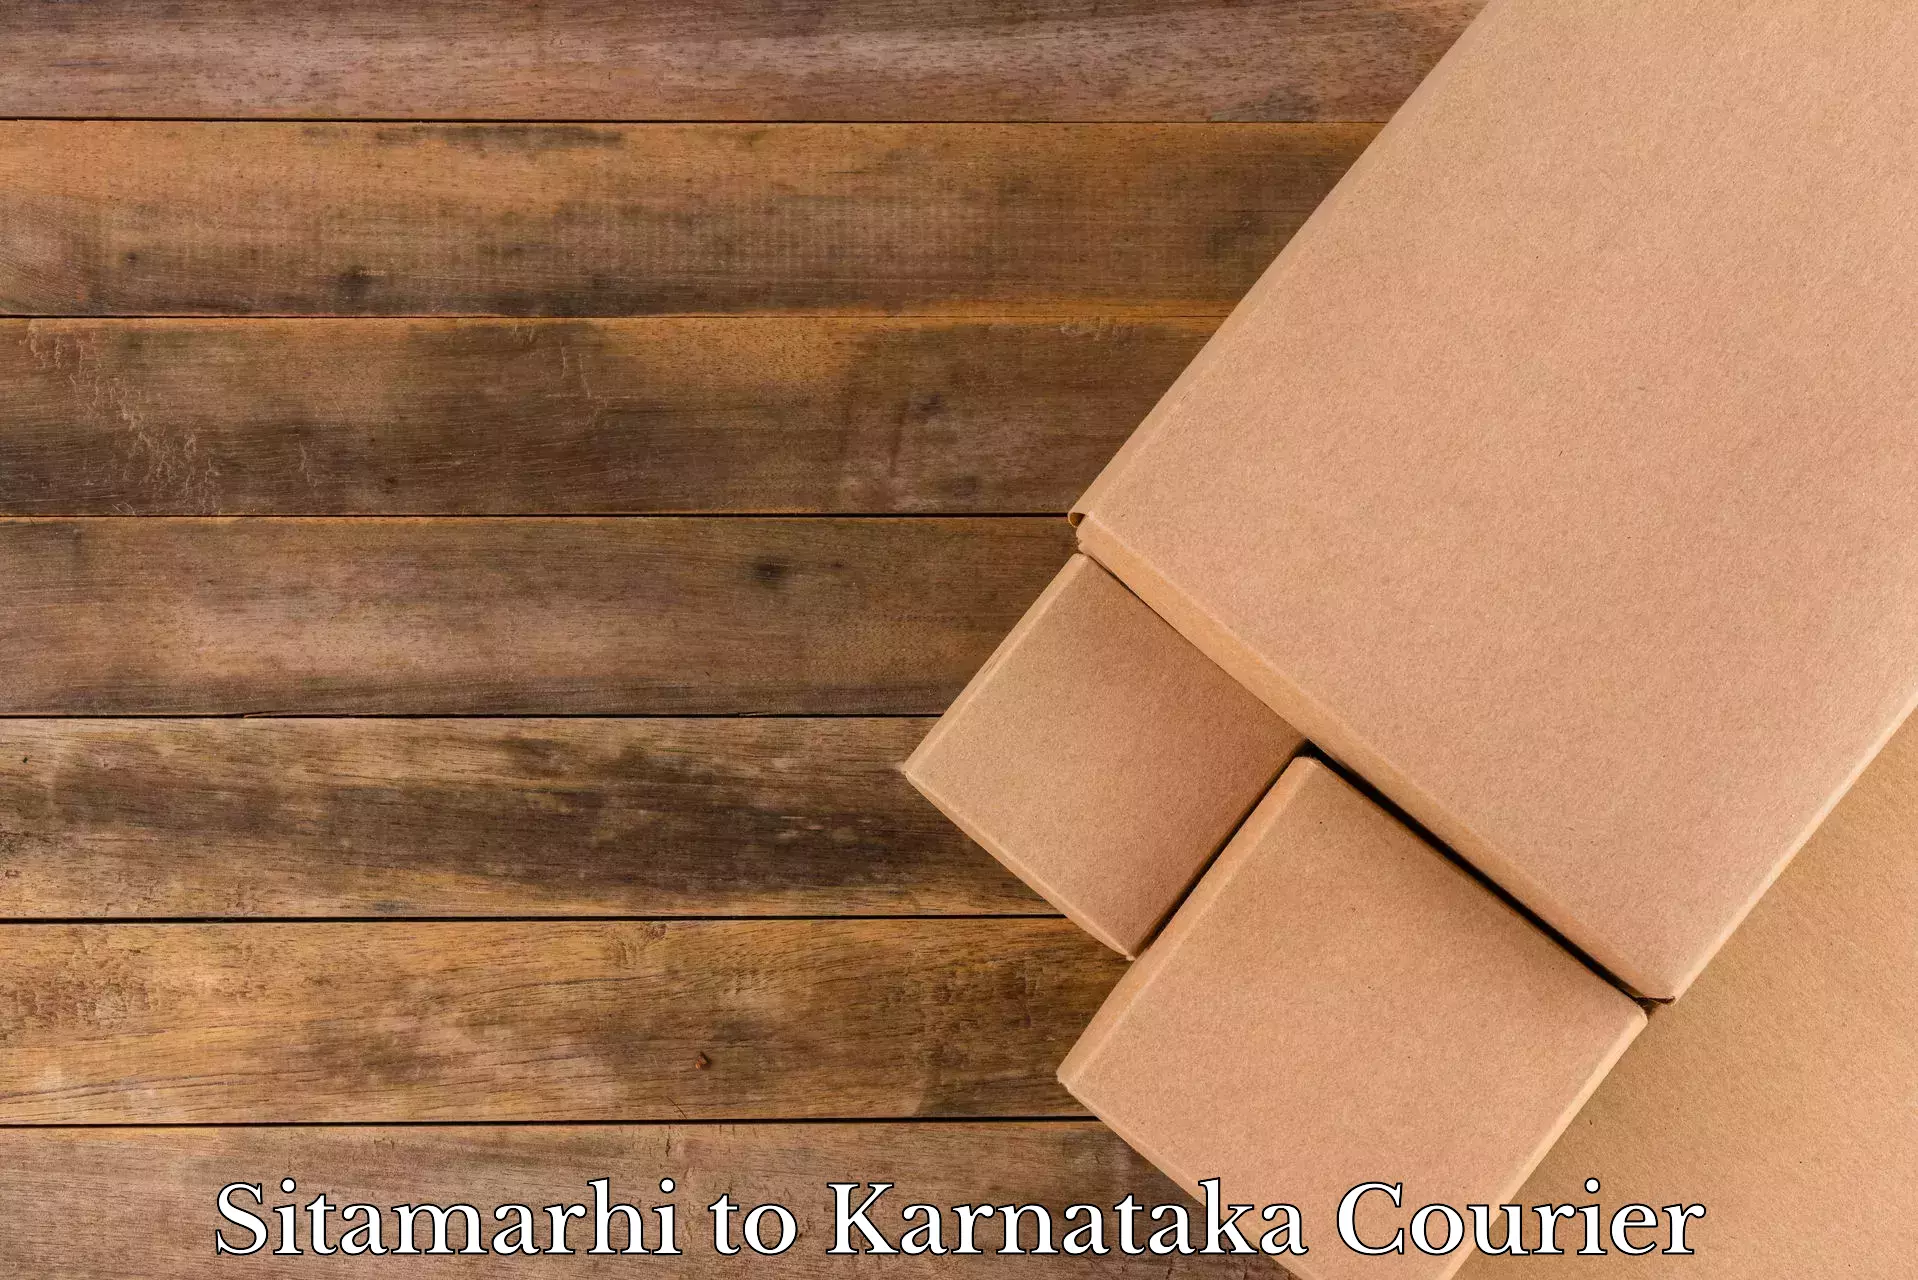 Door-to-door relocation services Sitamarhi to Kanjarakatte